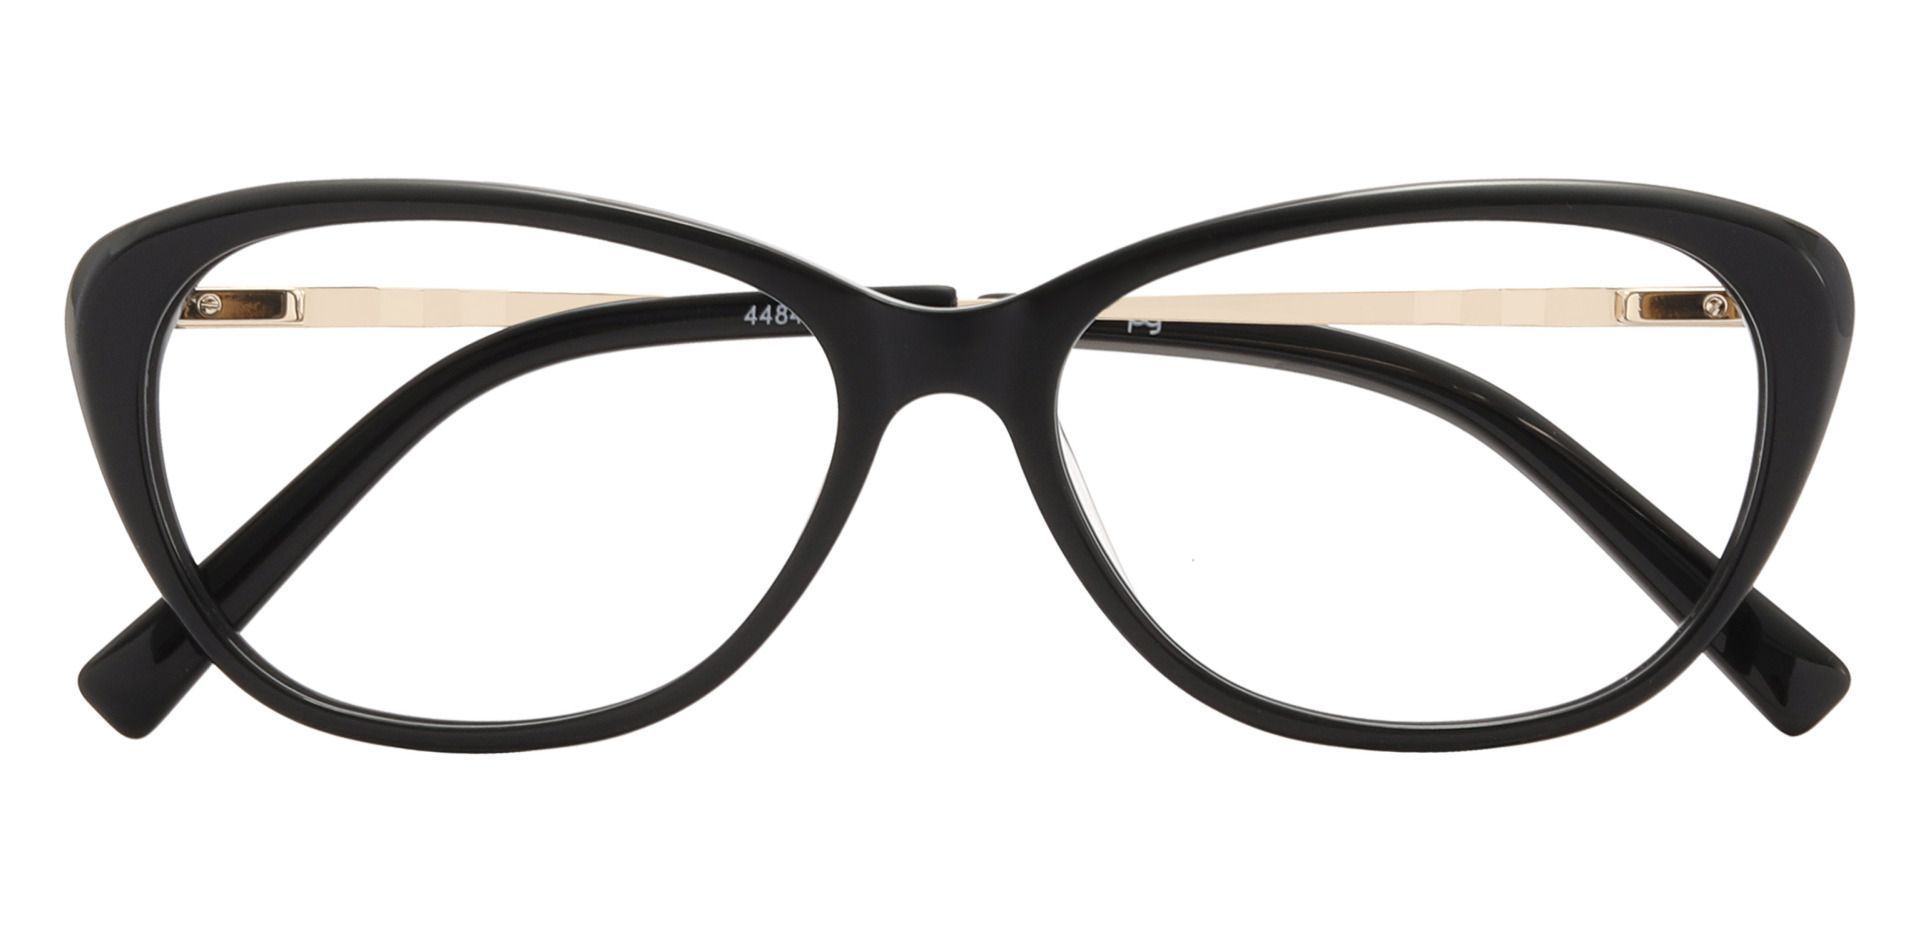 Elyria Cat Eye Prescription Glasses Black Women S Eyeglasses Payne Glasses